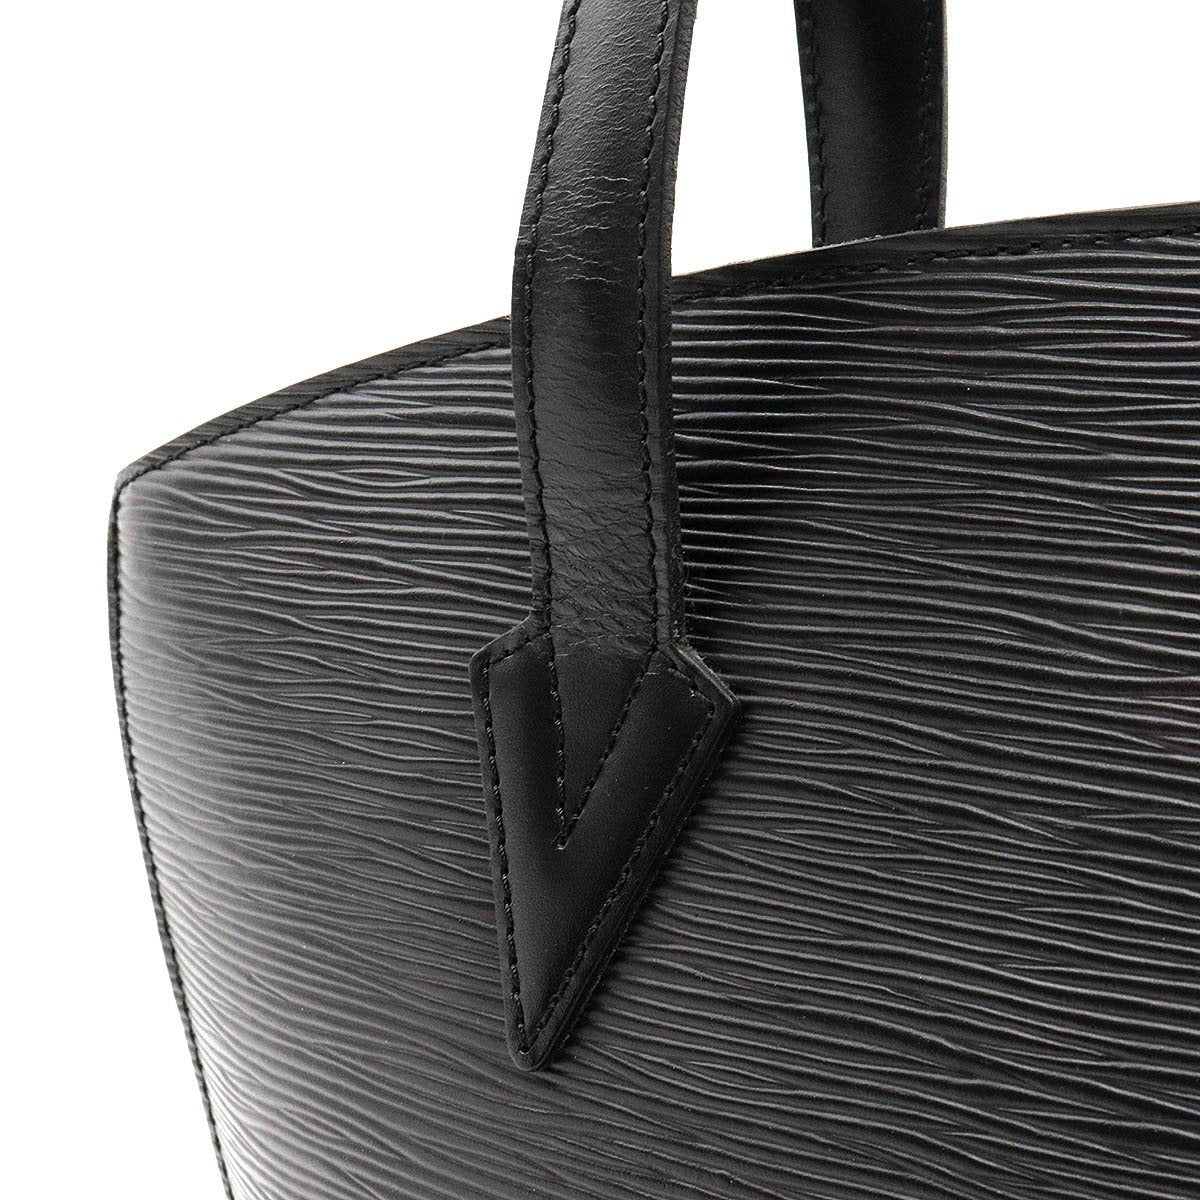 Louis Vuitton Epi Leather Saint Jacques Handbag Black